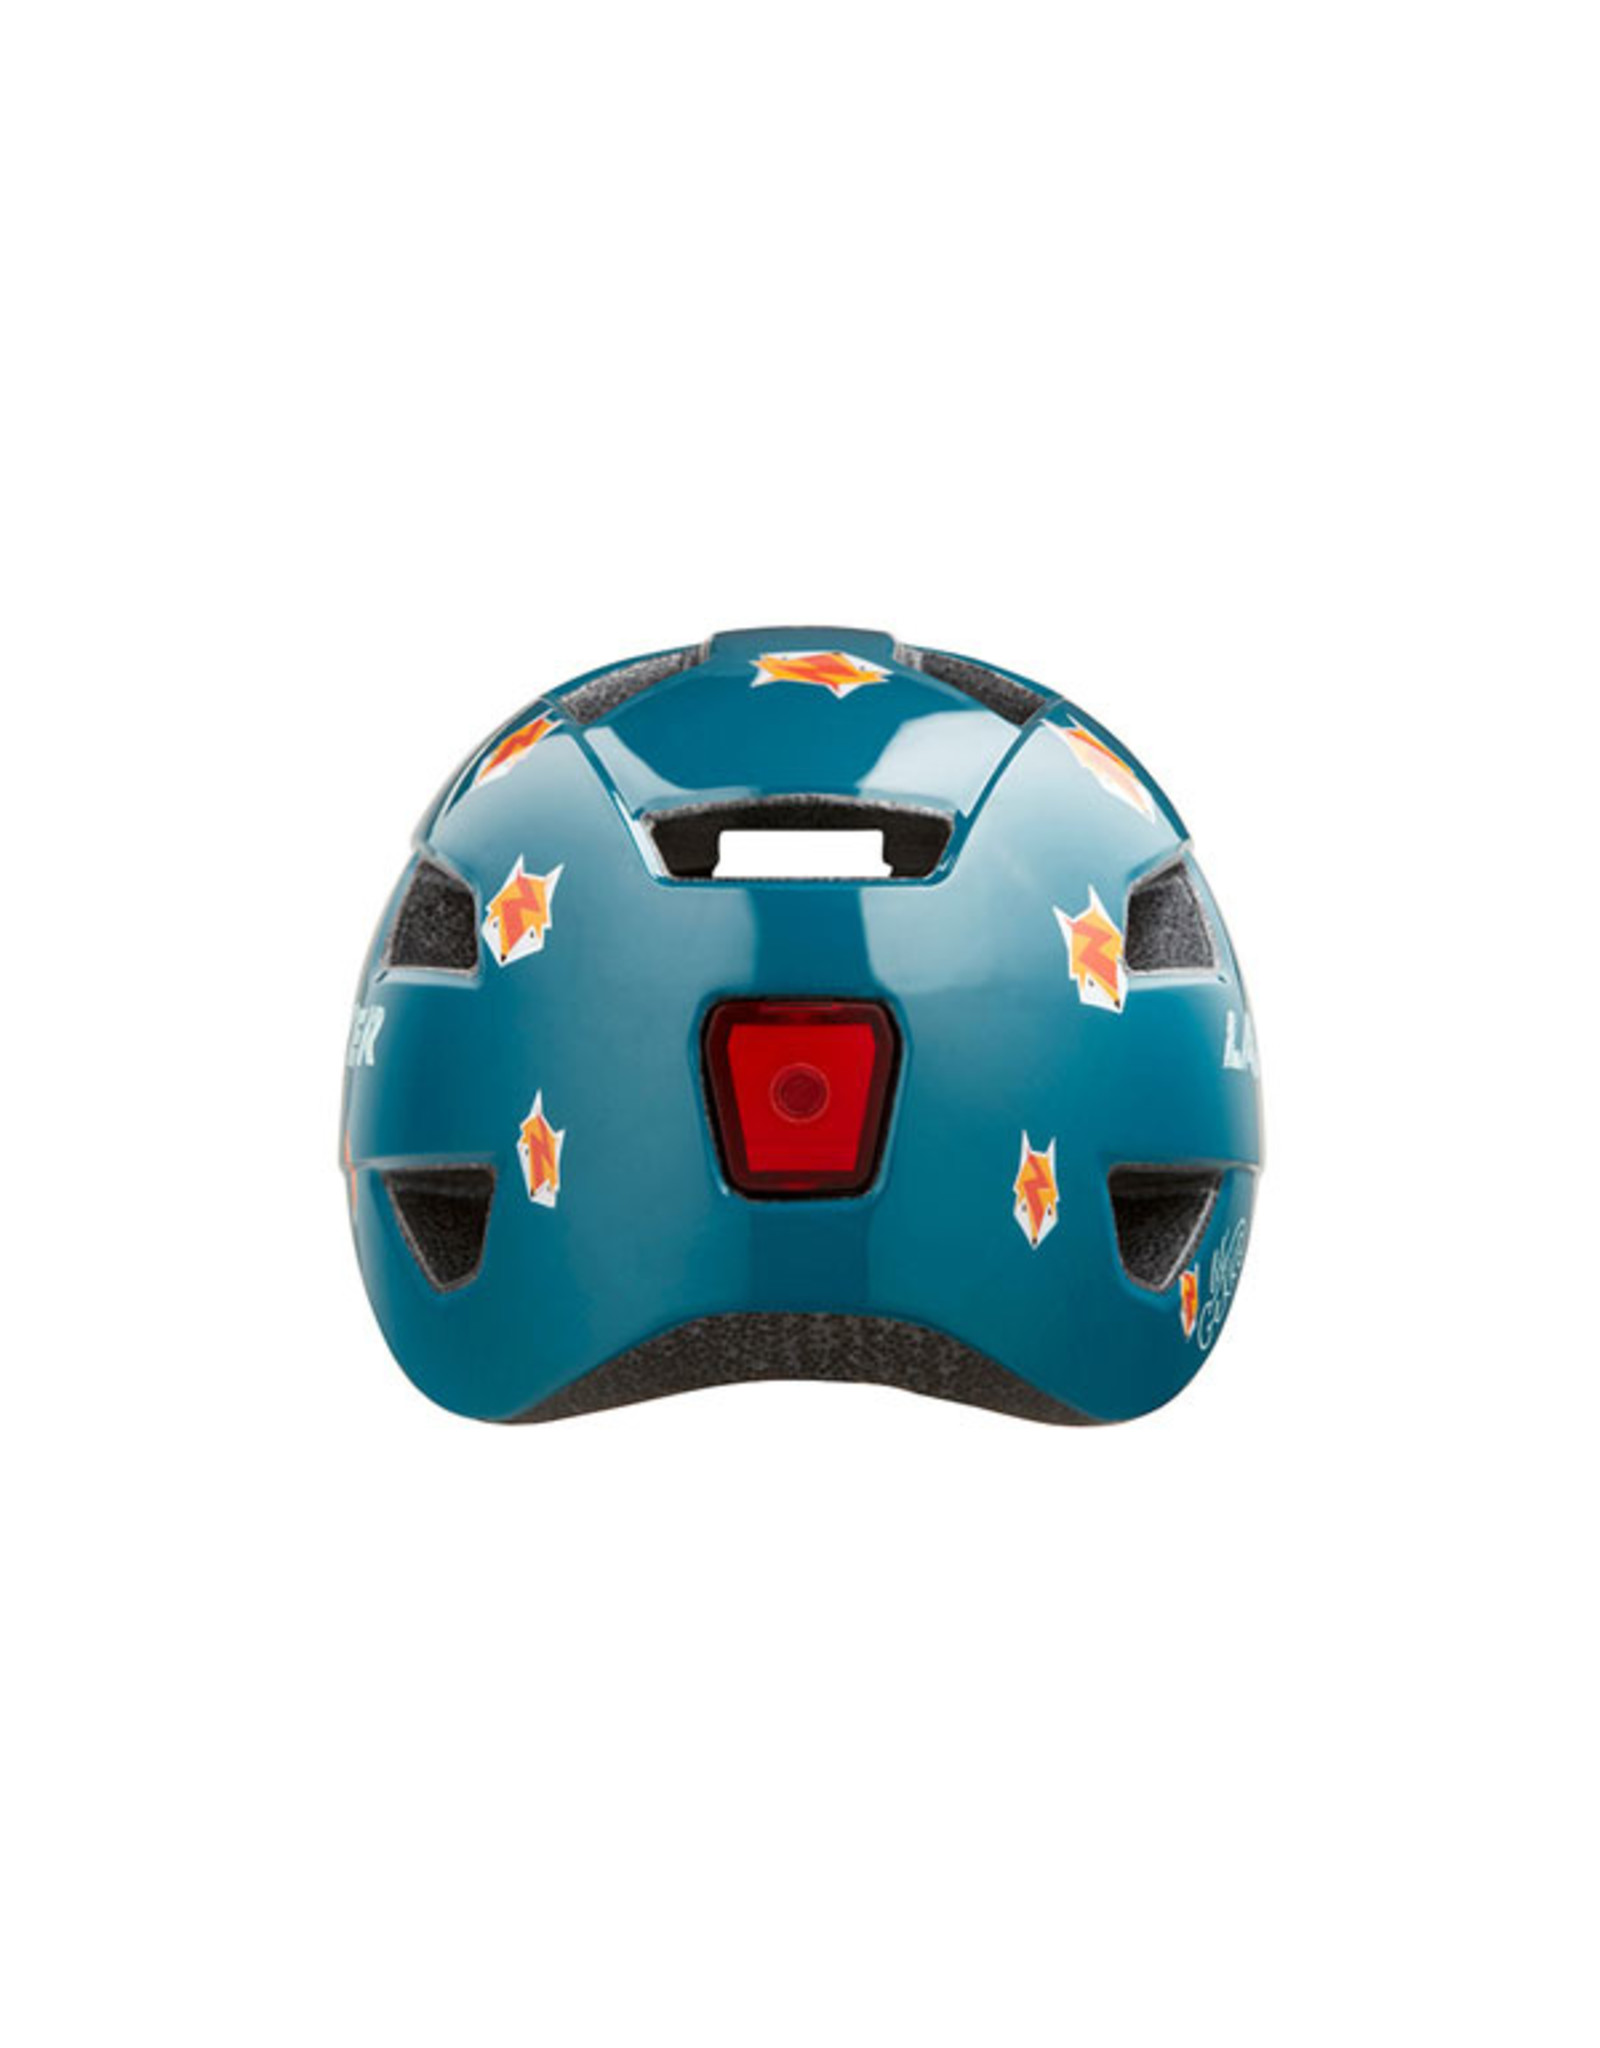 Helmet Blue w/ Foxes Unisize Toddler (46-50 cm) Lil Gekko Lazer